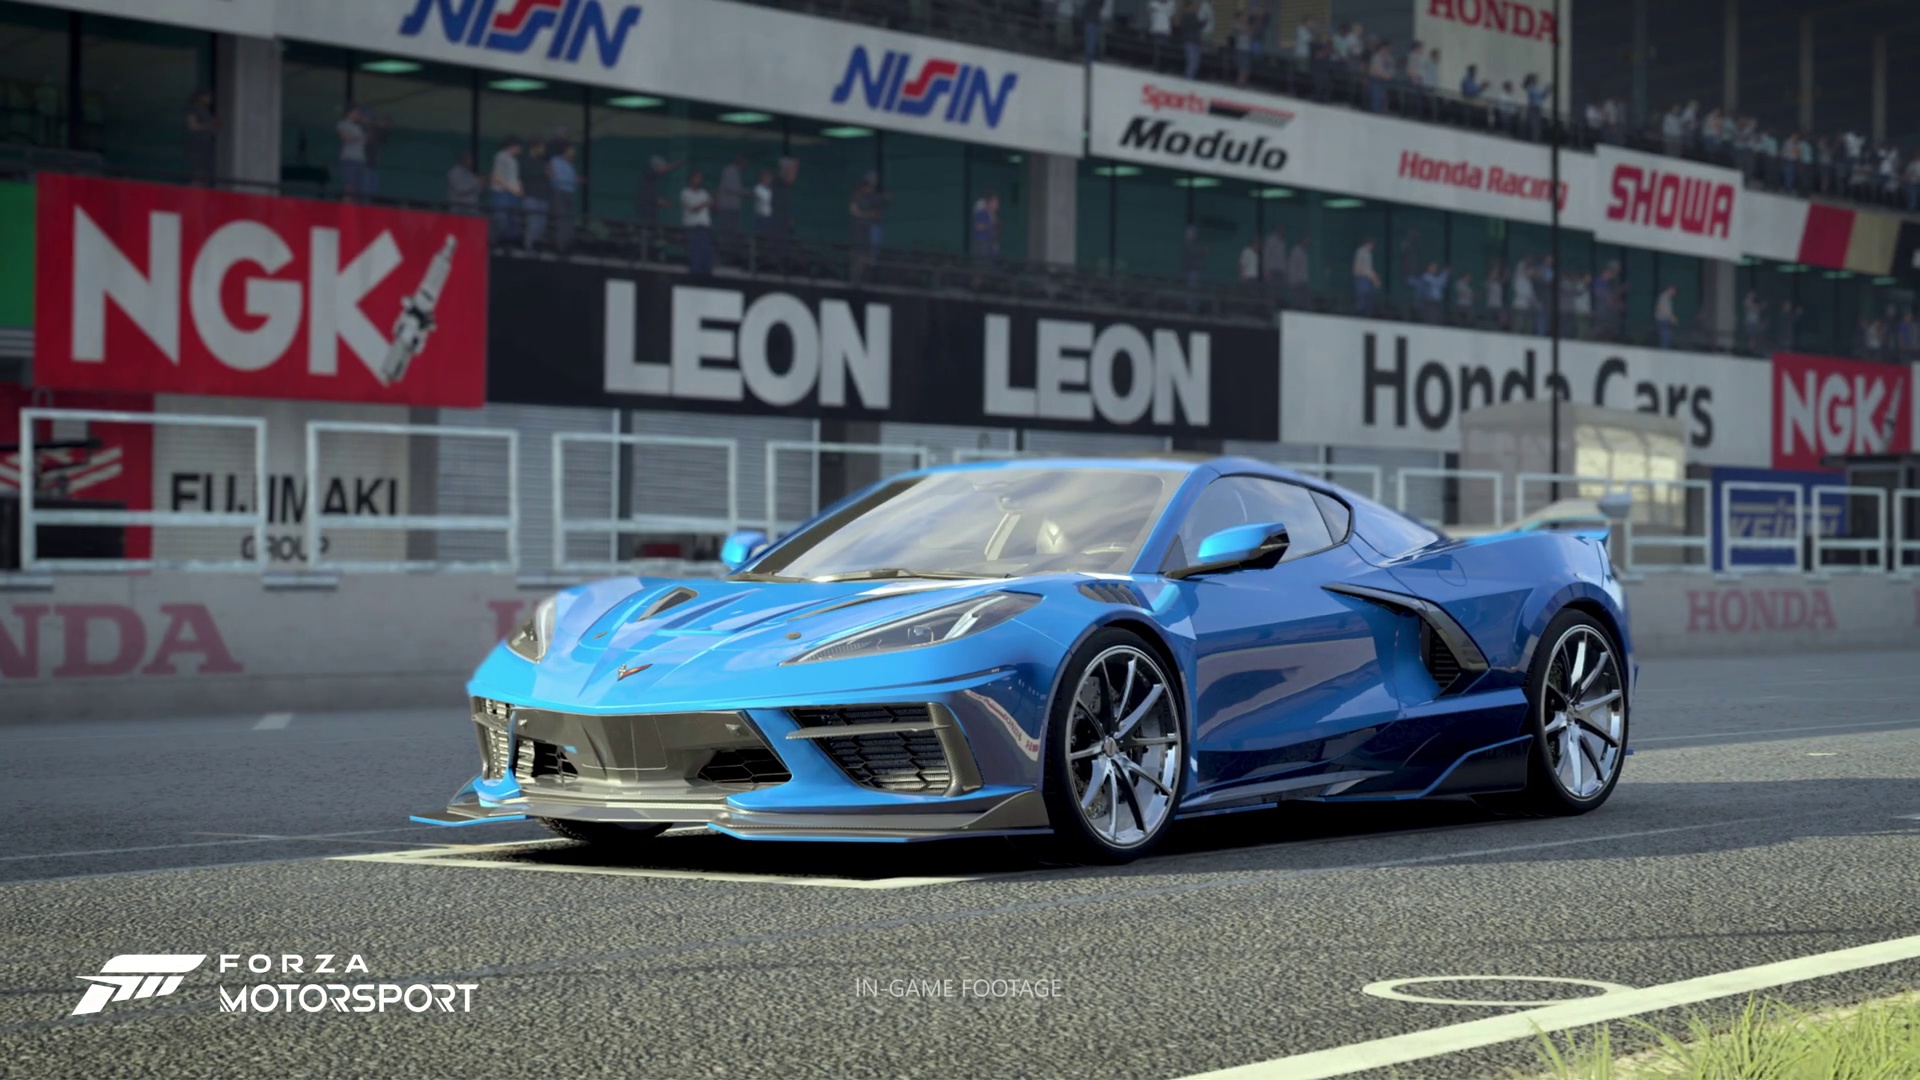 #Forza Motorsport zeigt atemberaubend schönen Trailer und enthüllt den Release-Termin